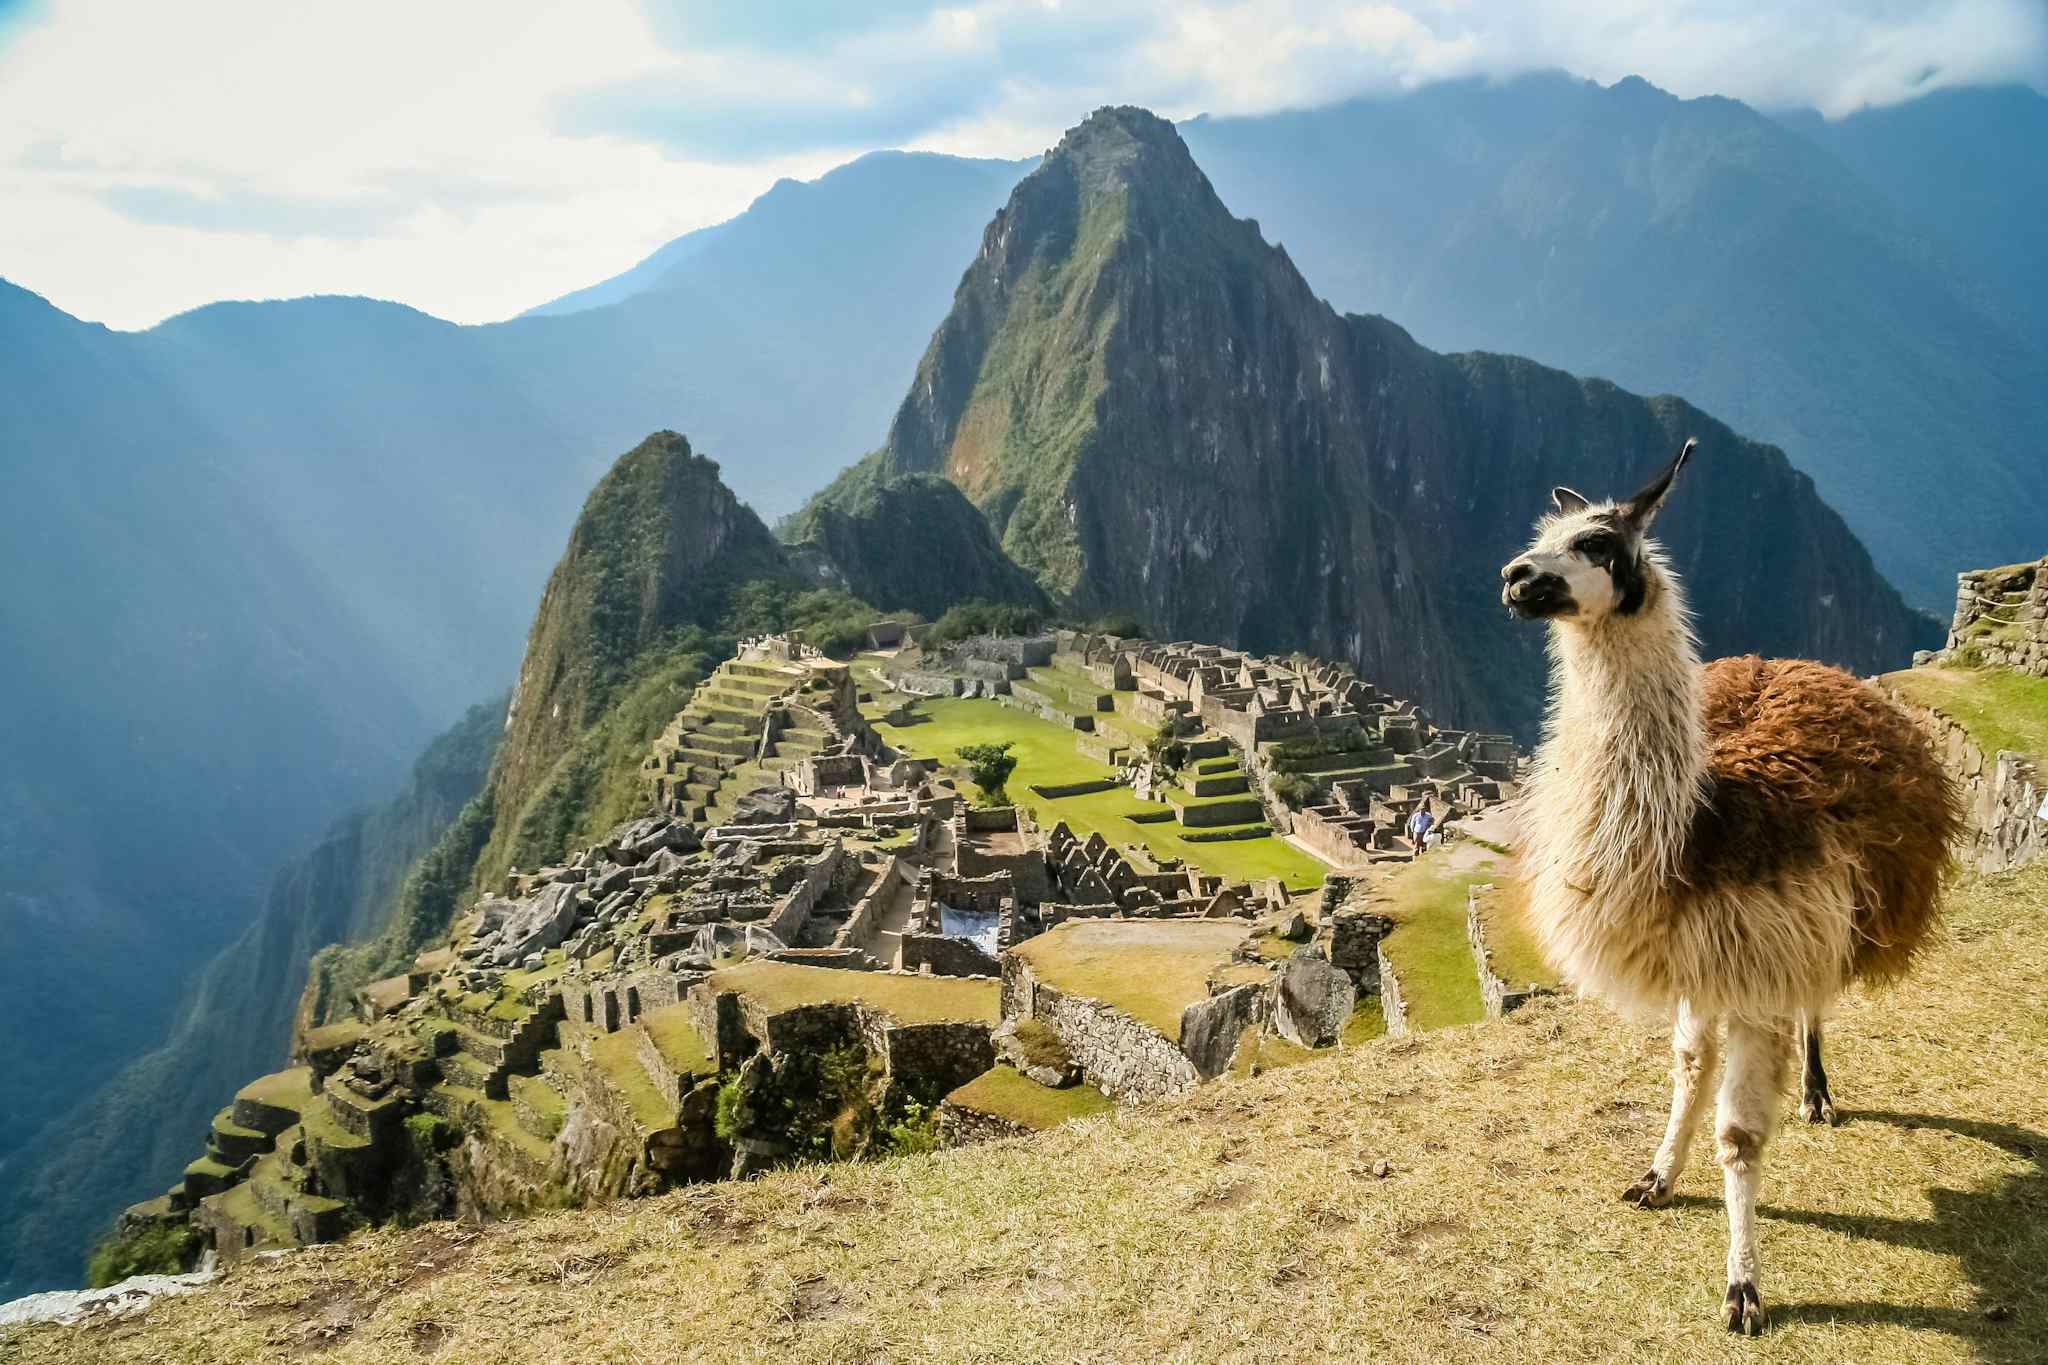 Llama standing in front of Machu Picchu in Peru